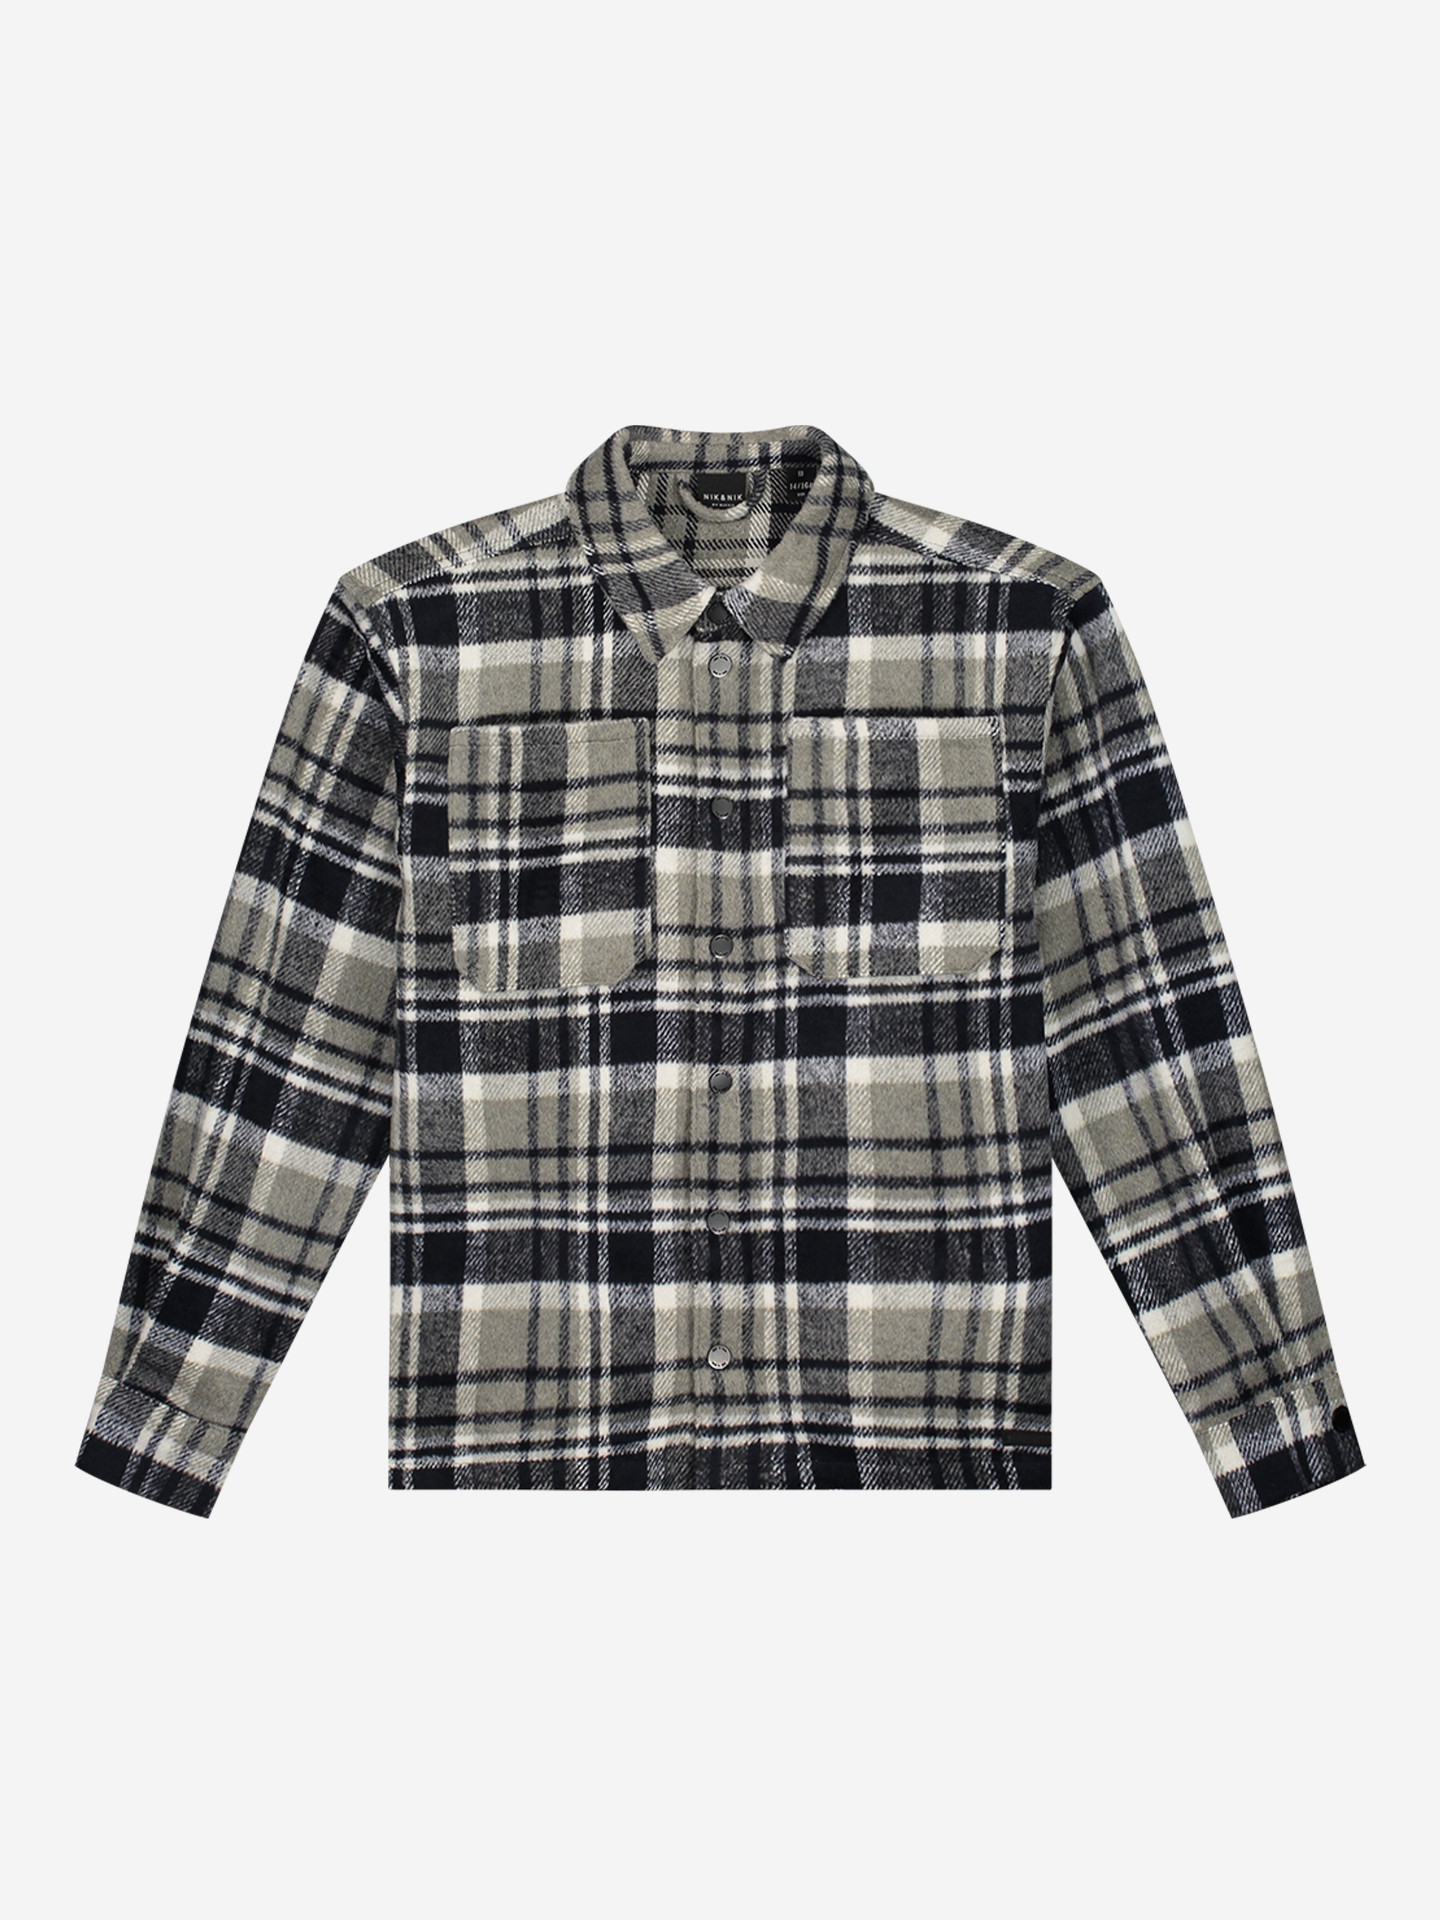 Checkered shirt jacket